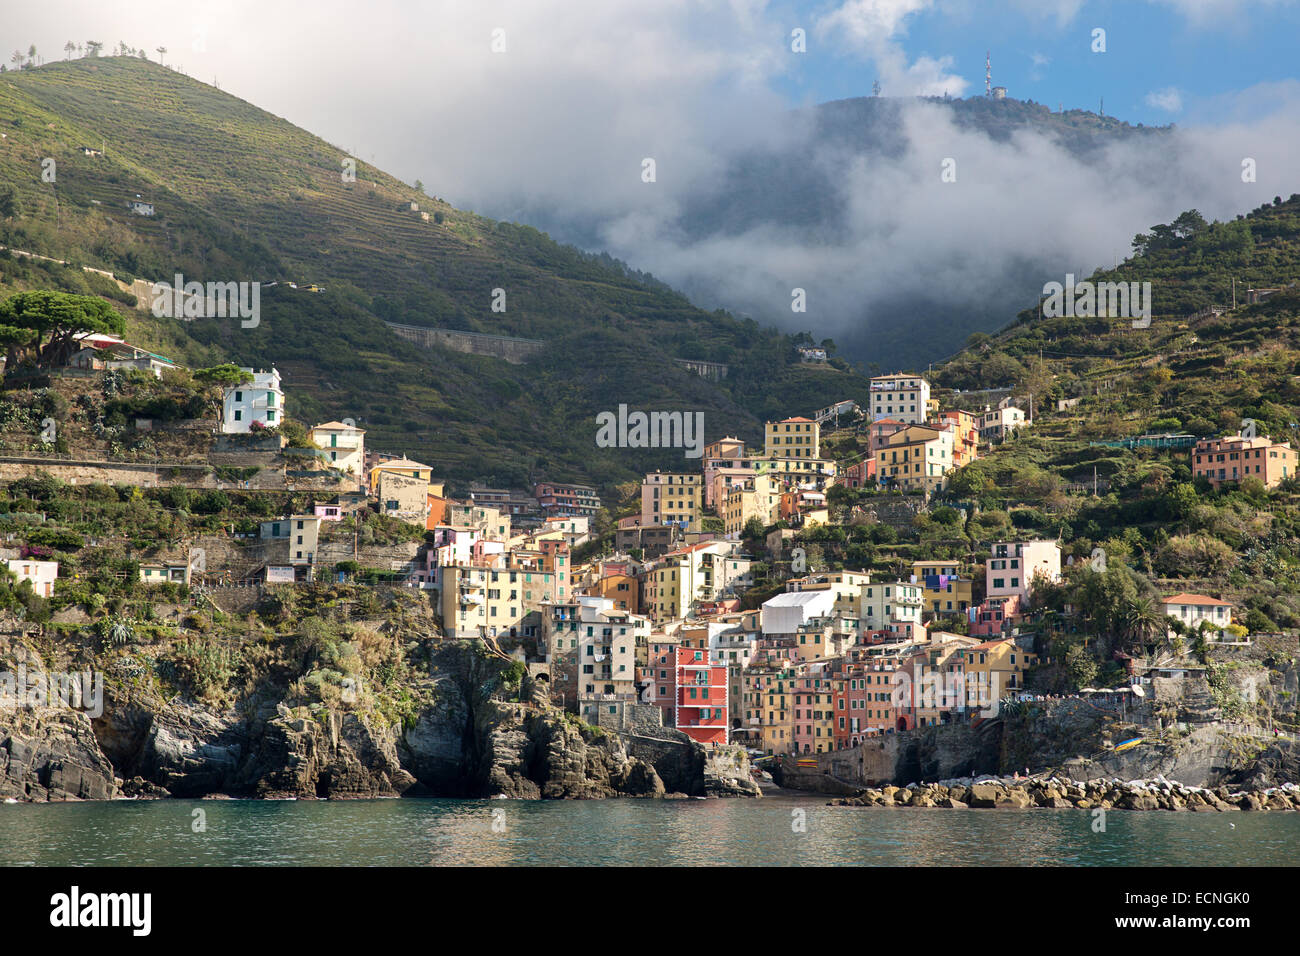 The town of Riomaggiore in Cinque Terre, Italy. Stock Photo